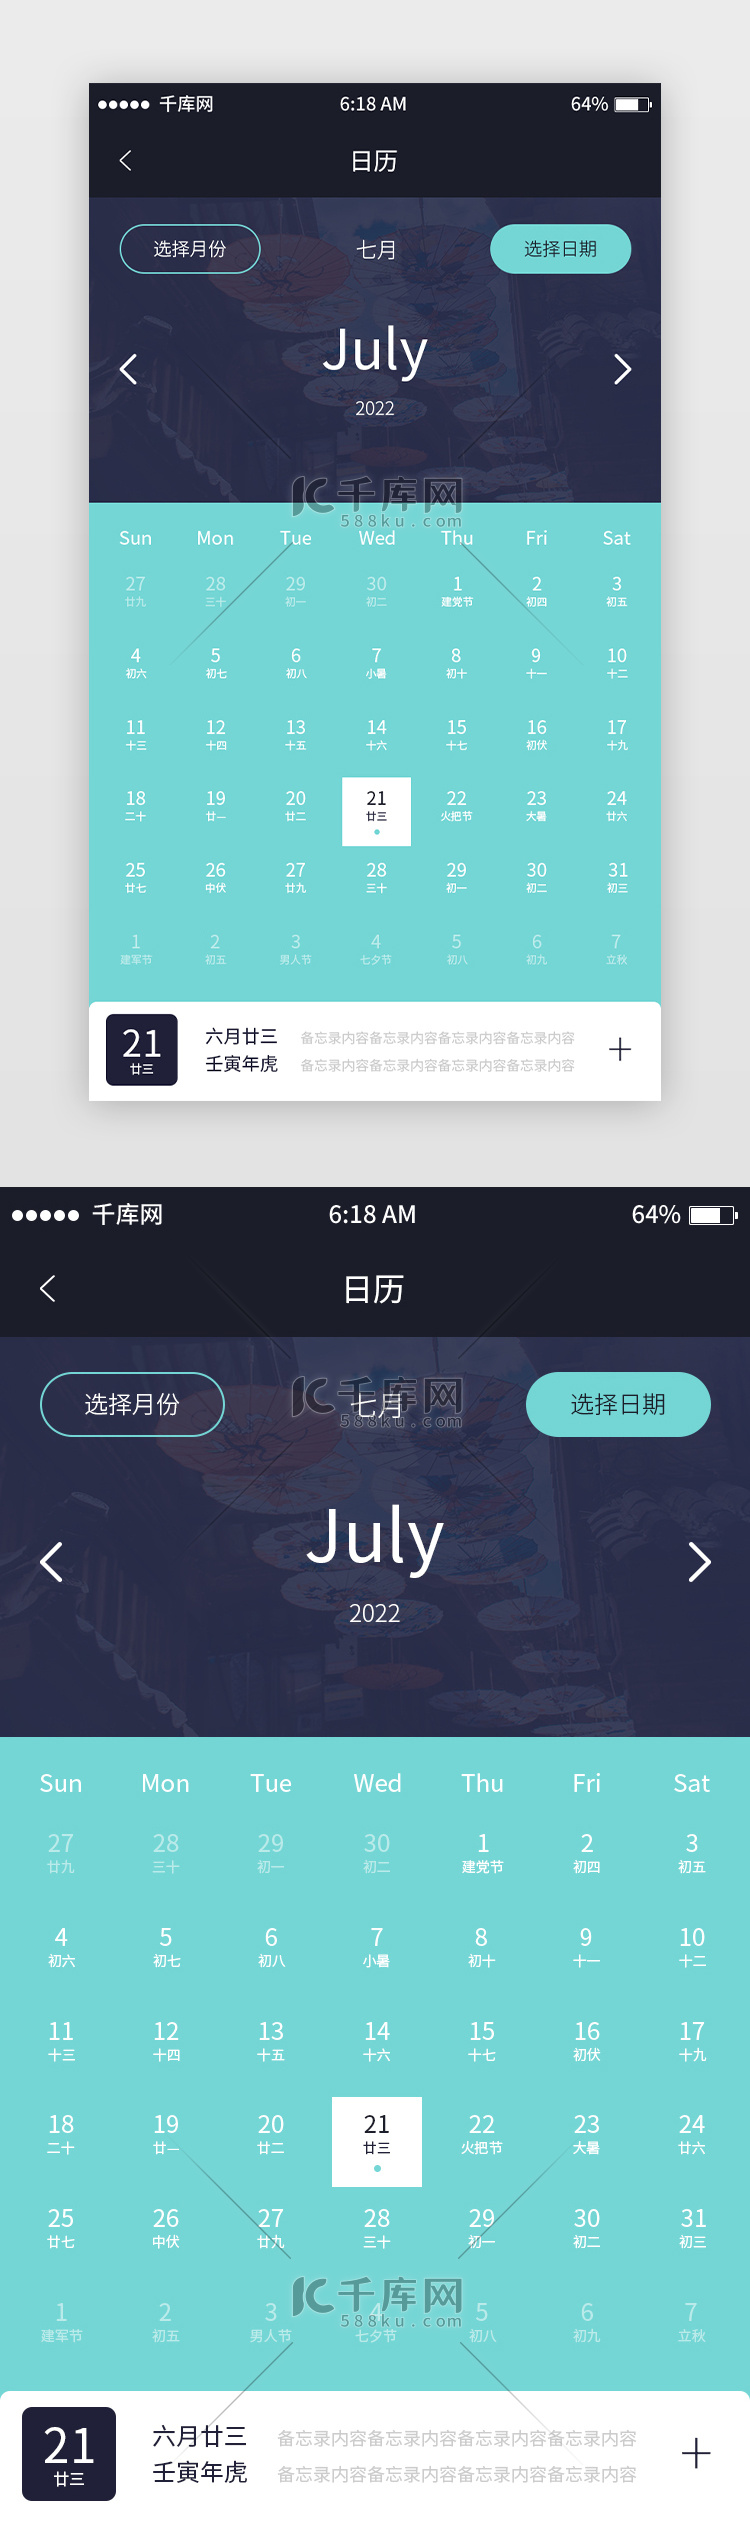 日历2022年七月app界面简洁绿色日历2022年七月界面